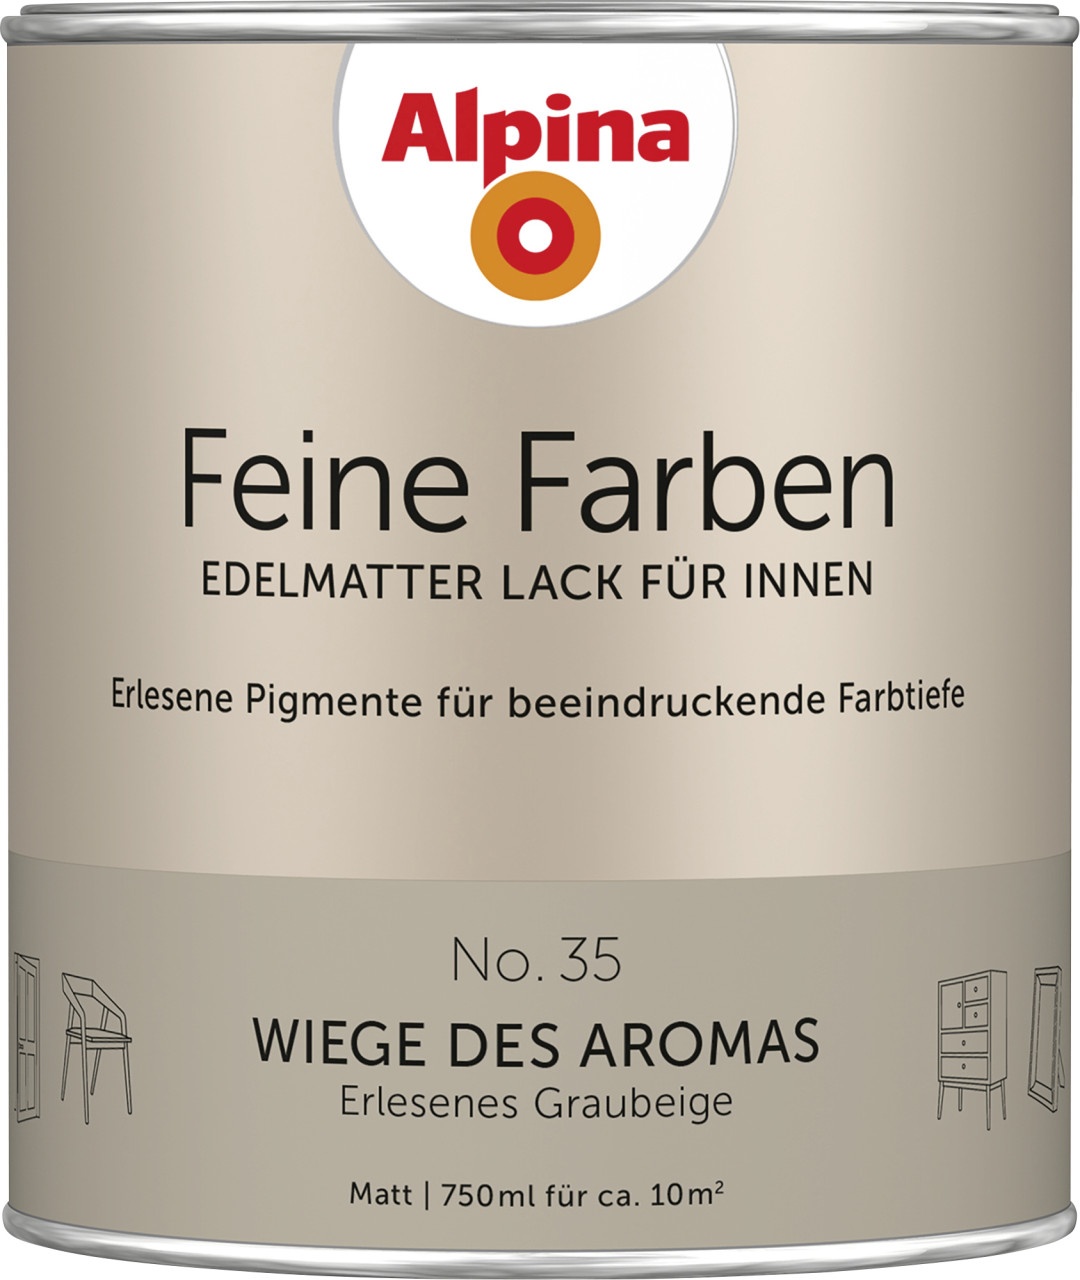 Alpina Feine Farben Lack No. 35 Wiege des Aromas  graubeige edelmatt 750 ml